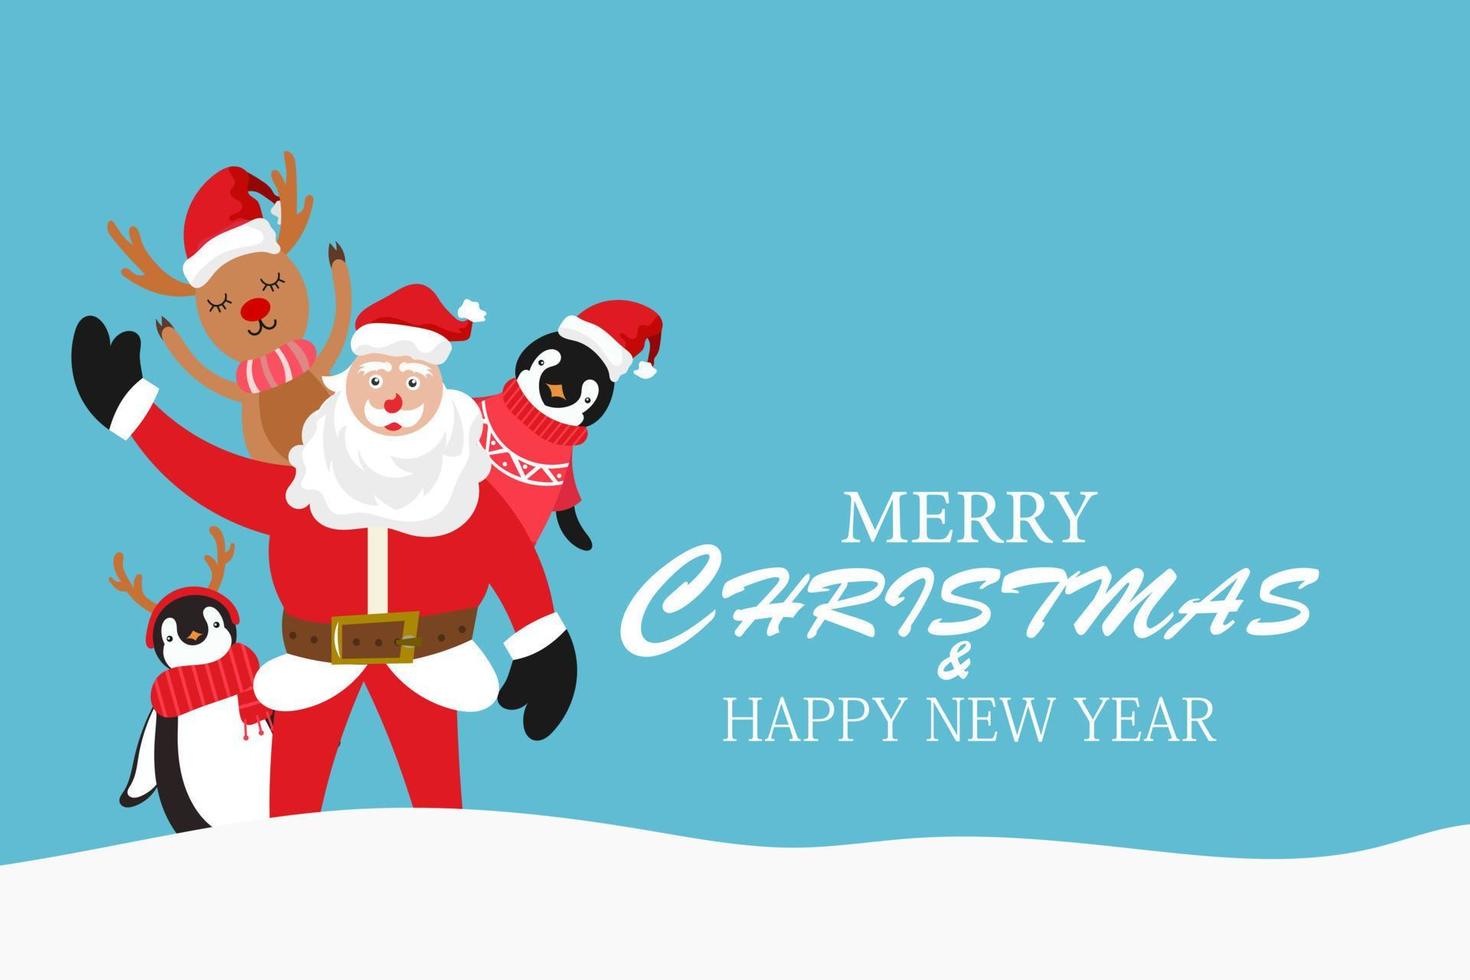 allegro Natale e contento nuovo anno con carino Santa Claus e , pupazzo di neve ,pinguino cartone animato personaggio vettore. vettore